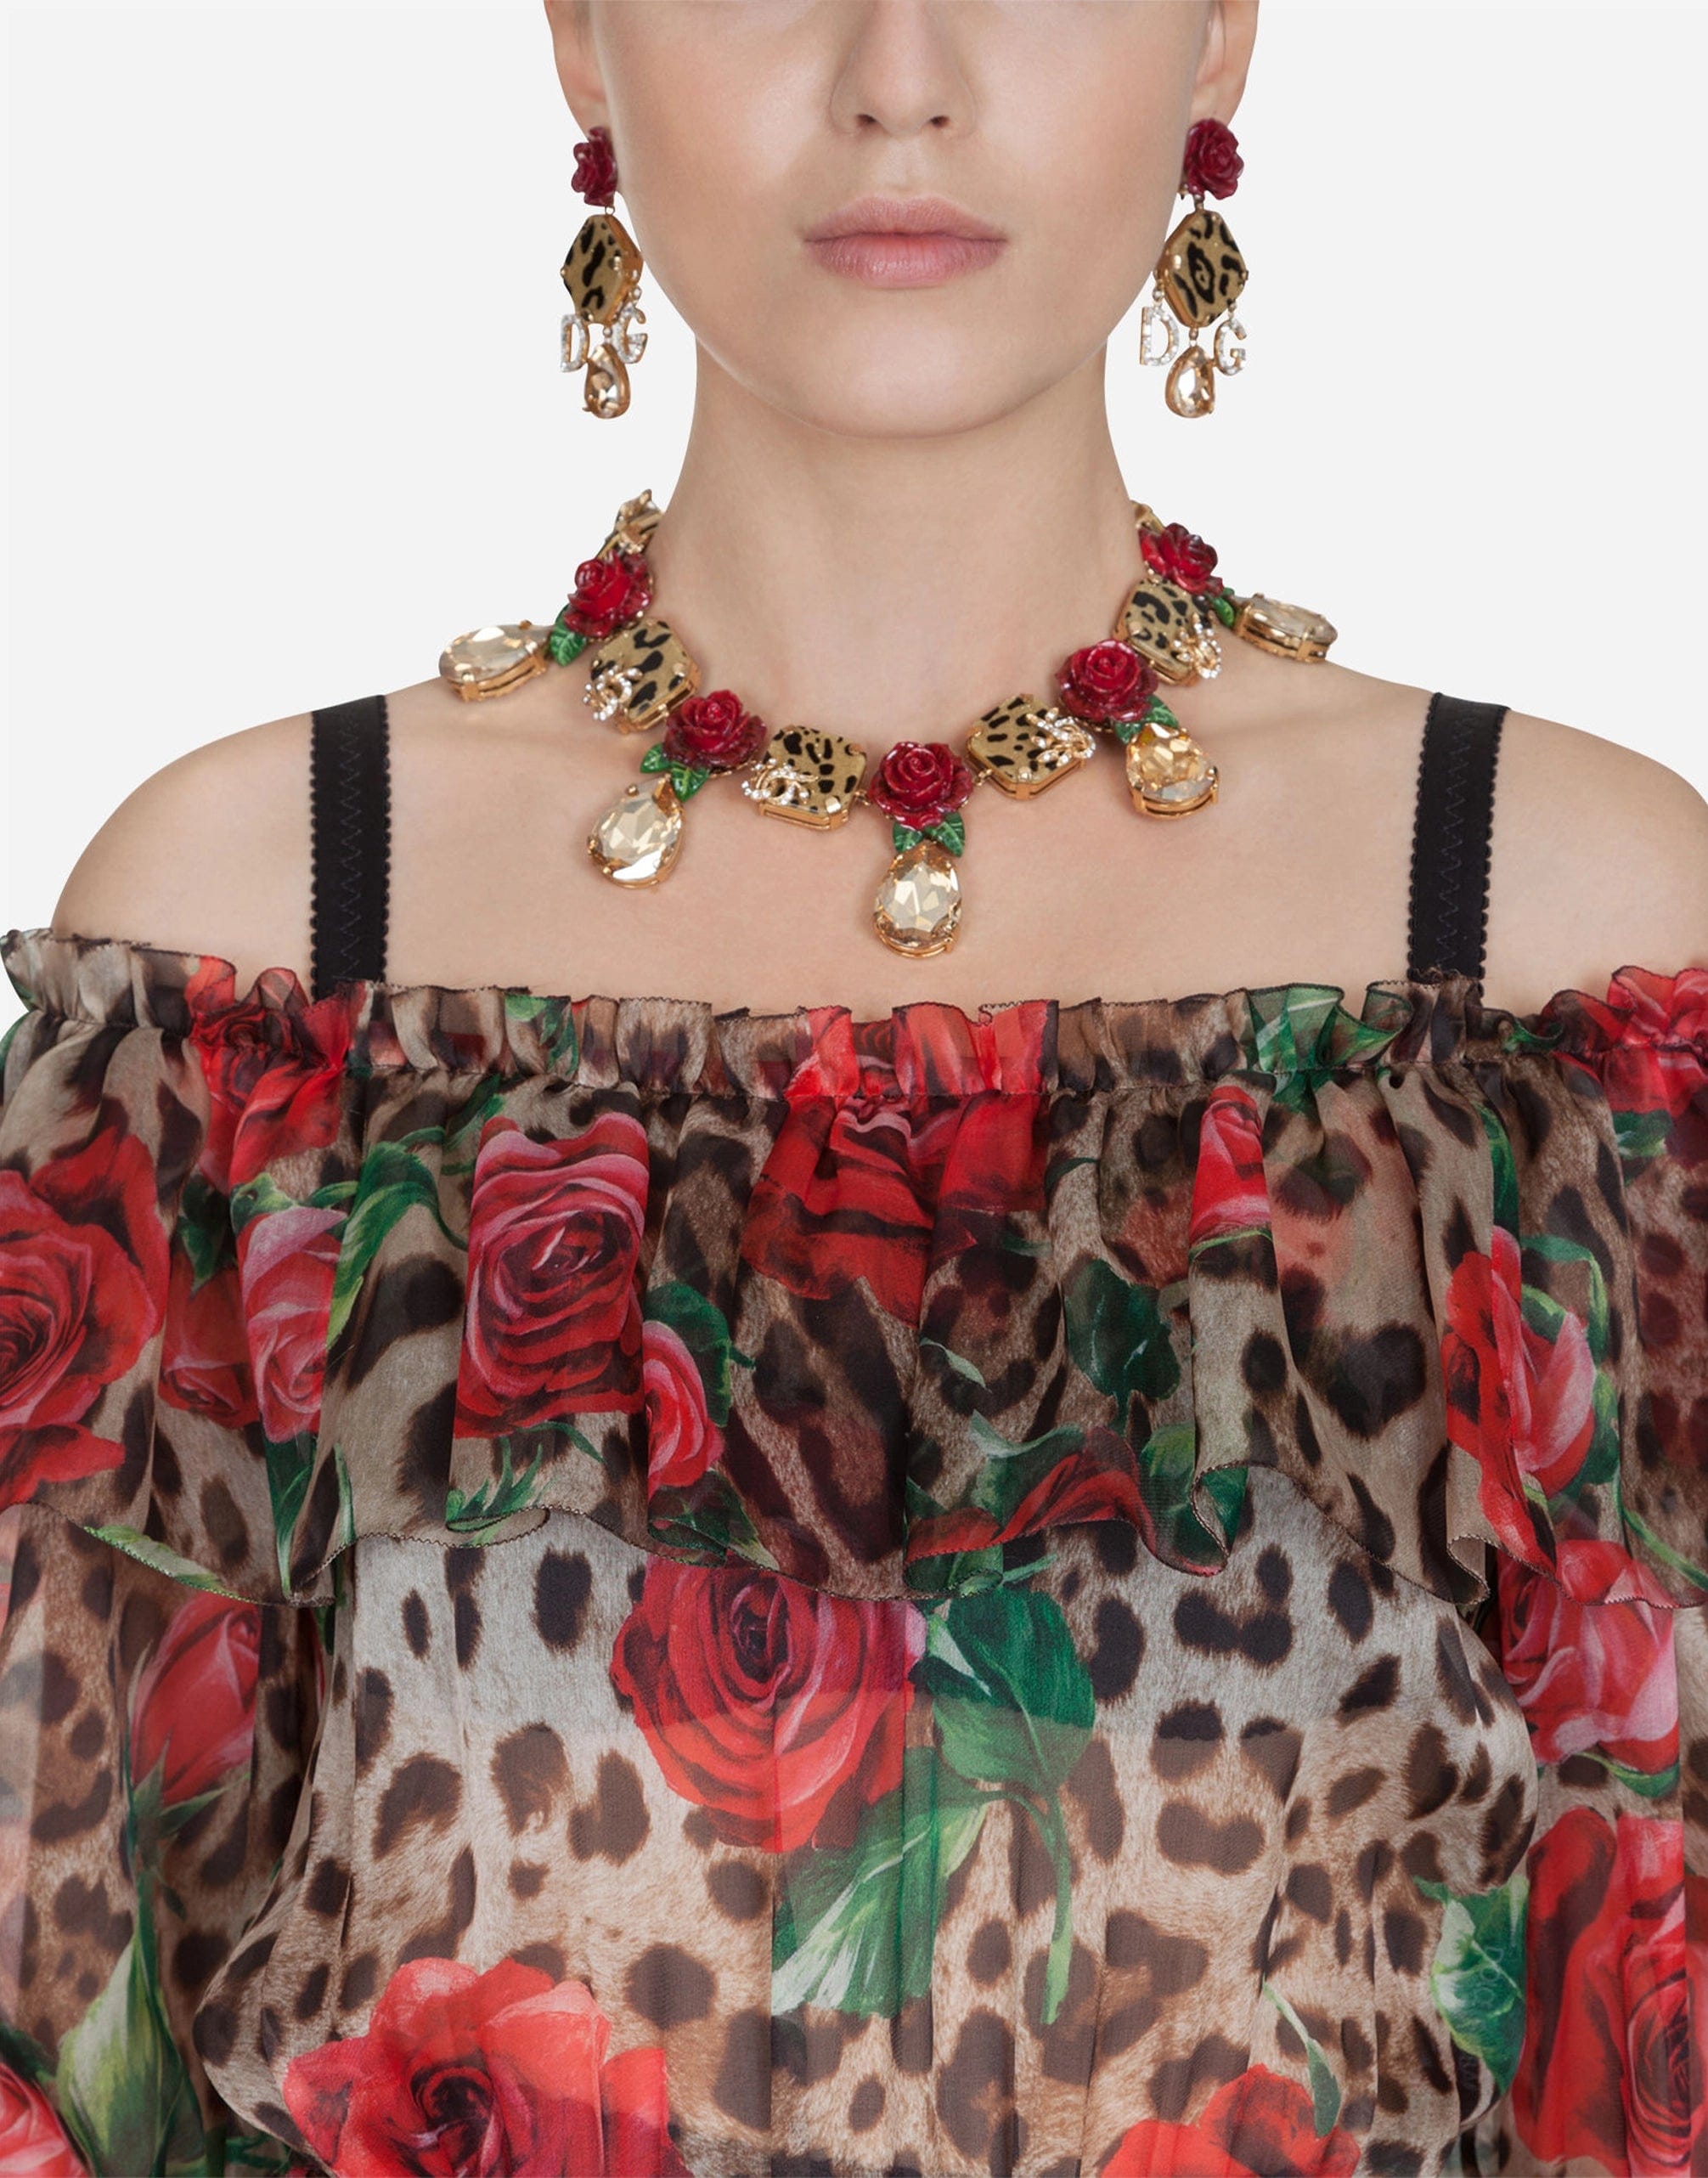 Dolce & Gabbana Long Dress In Silk Organza